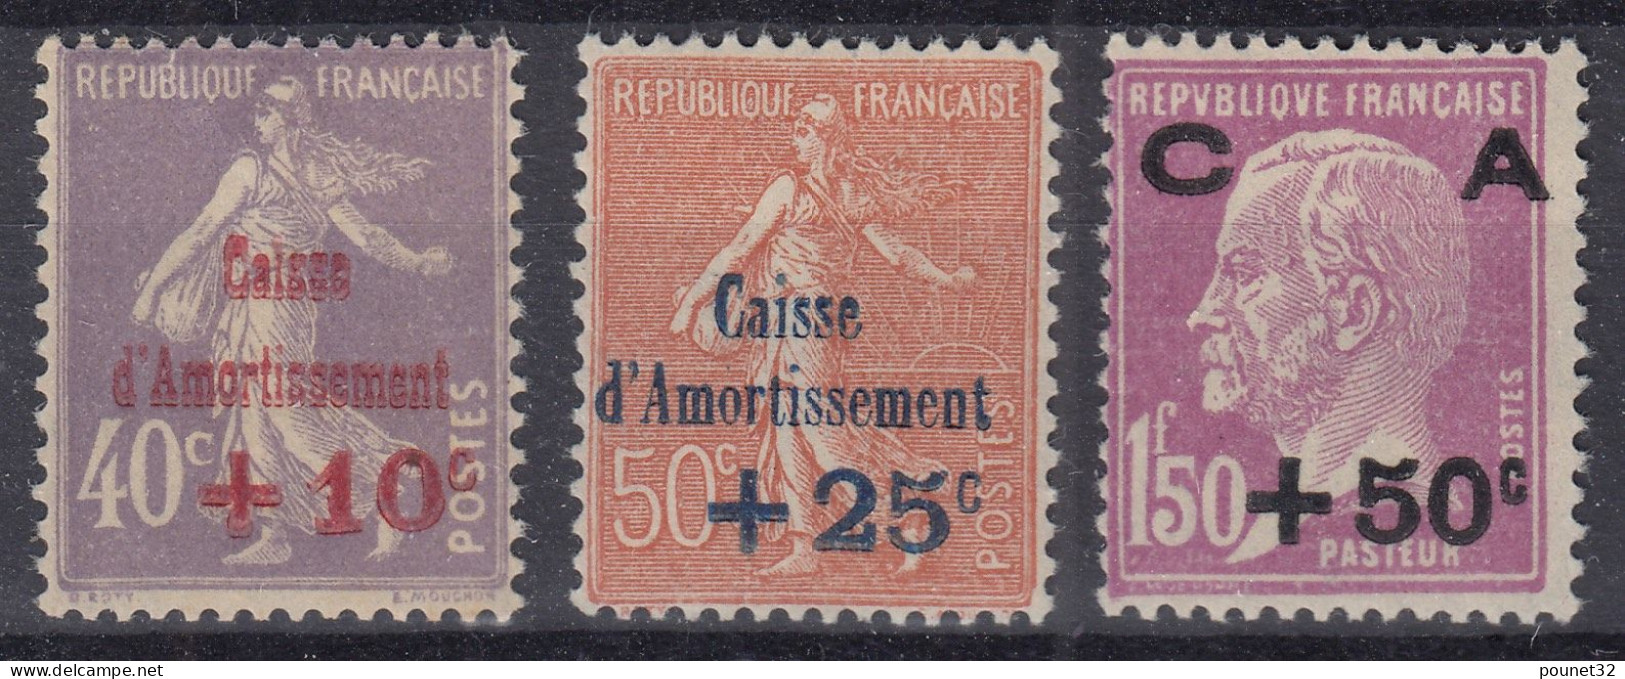 FRANCE CAISSE D'AMORTISSEMENT SERIE N° 249/251 NEUVE ** GOMME SANS CHARNIERE - 1927-31 Caisse D'Amortissement